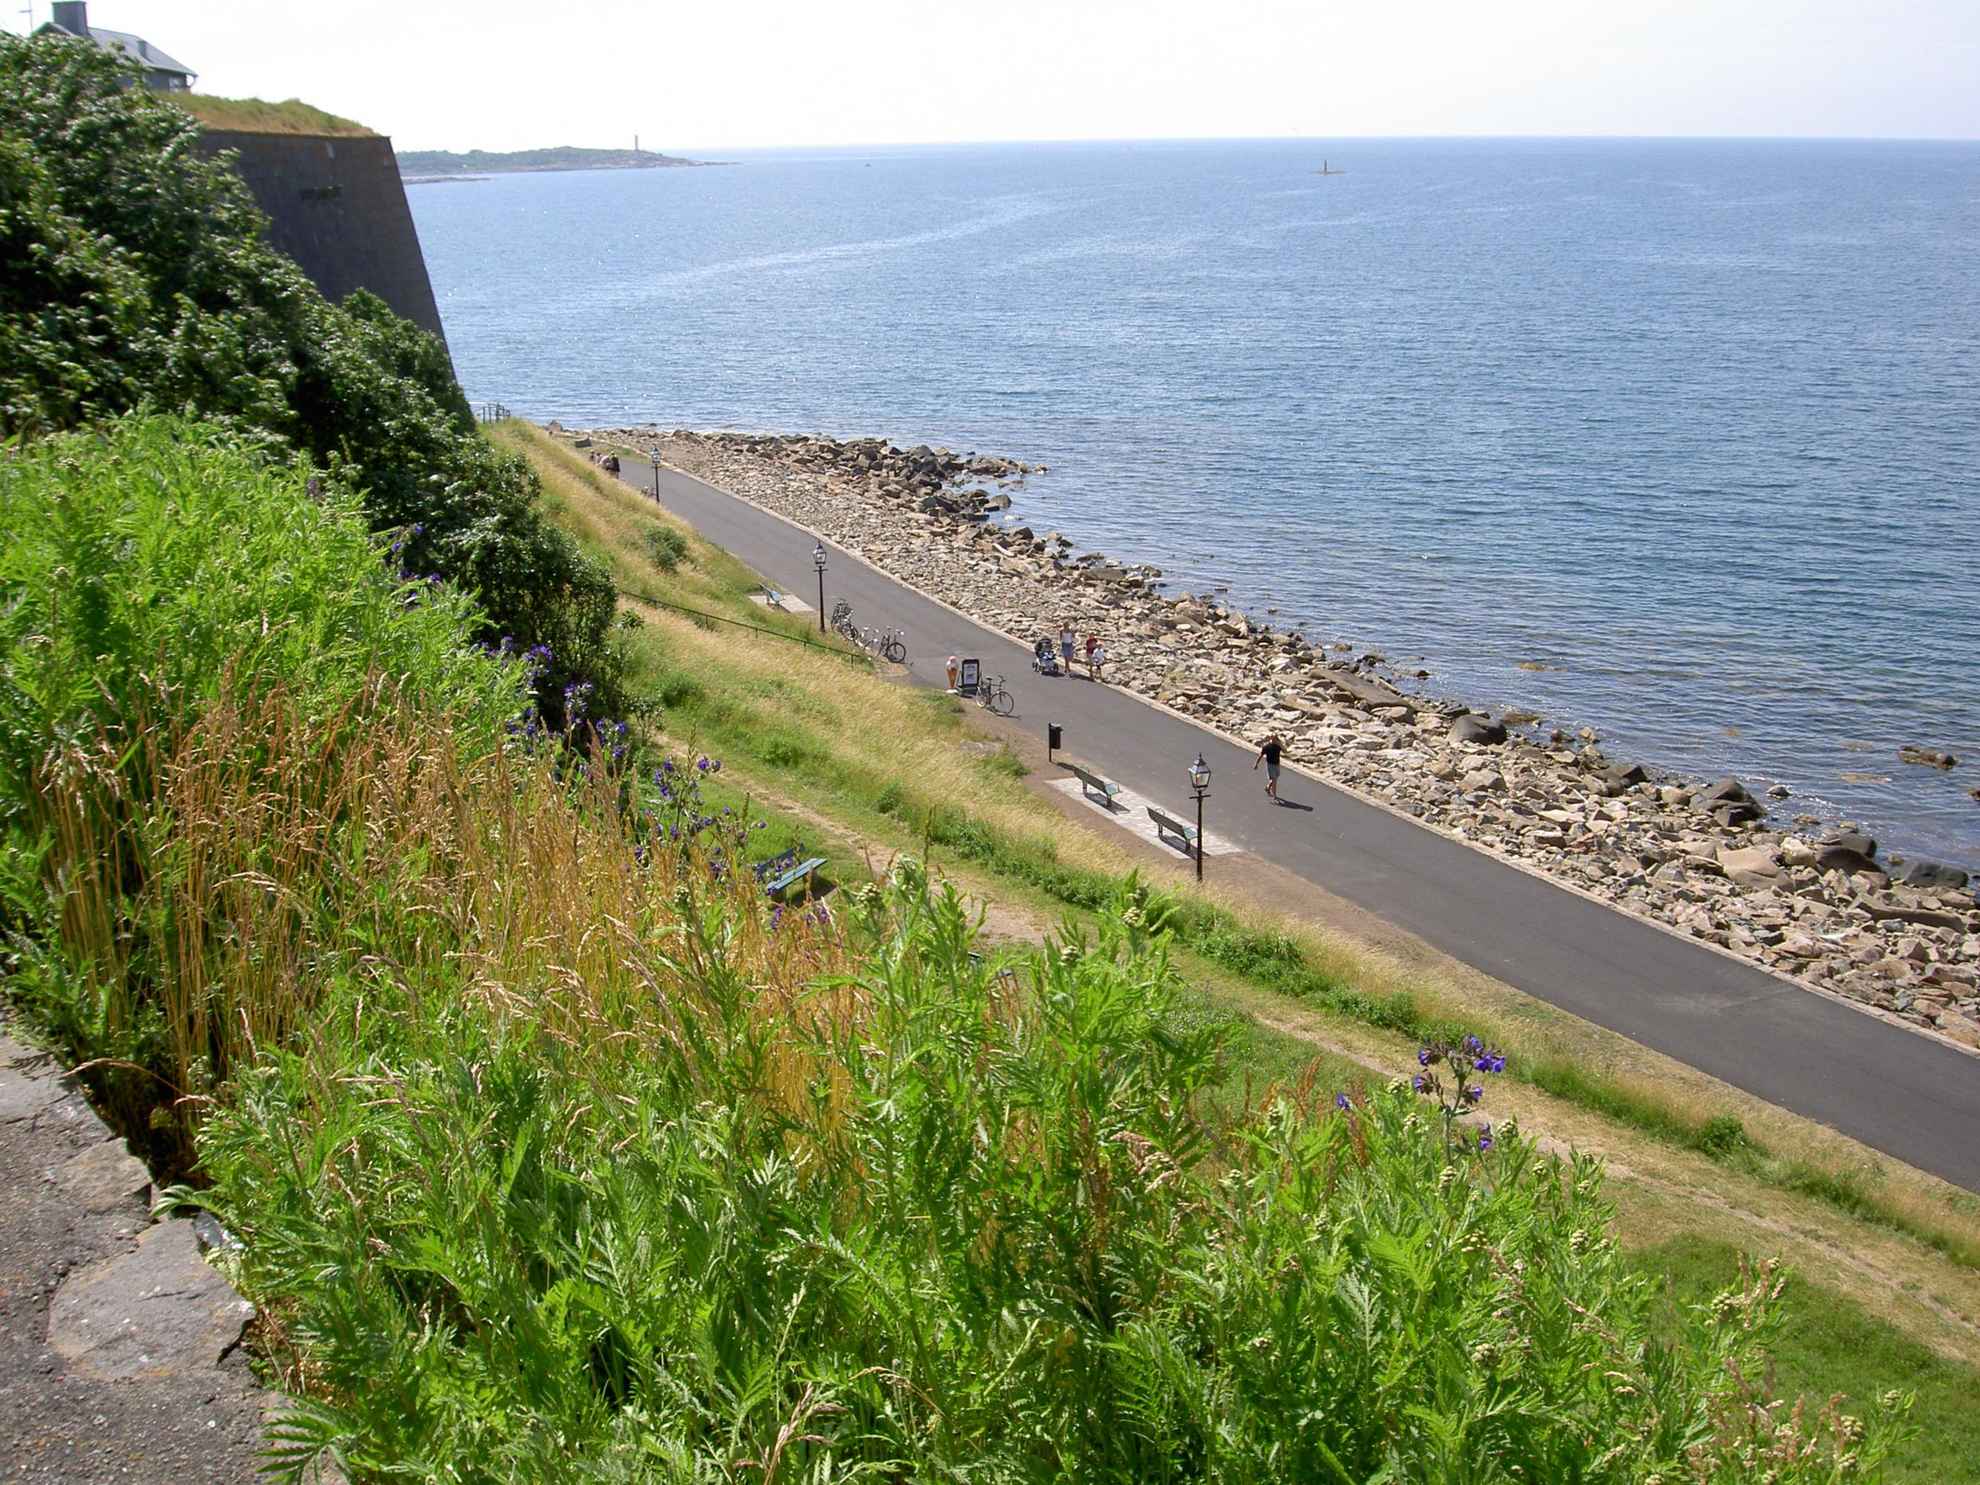 Eine Fahrradroute entlang der Uferpromenade, die vom Hügel oben aus gesehen wird. Menschen gehen auf der Straße und es gibt Fahrräder, die an der Seite geparkt sind. Grün im Vordergrund und das Meer im Hintergrund.